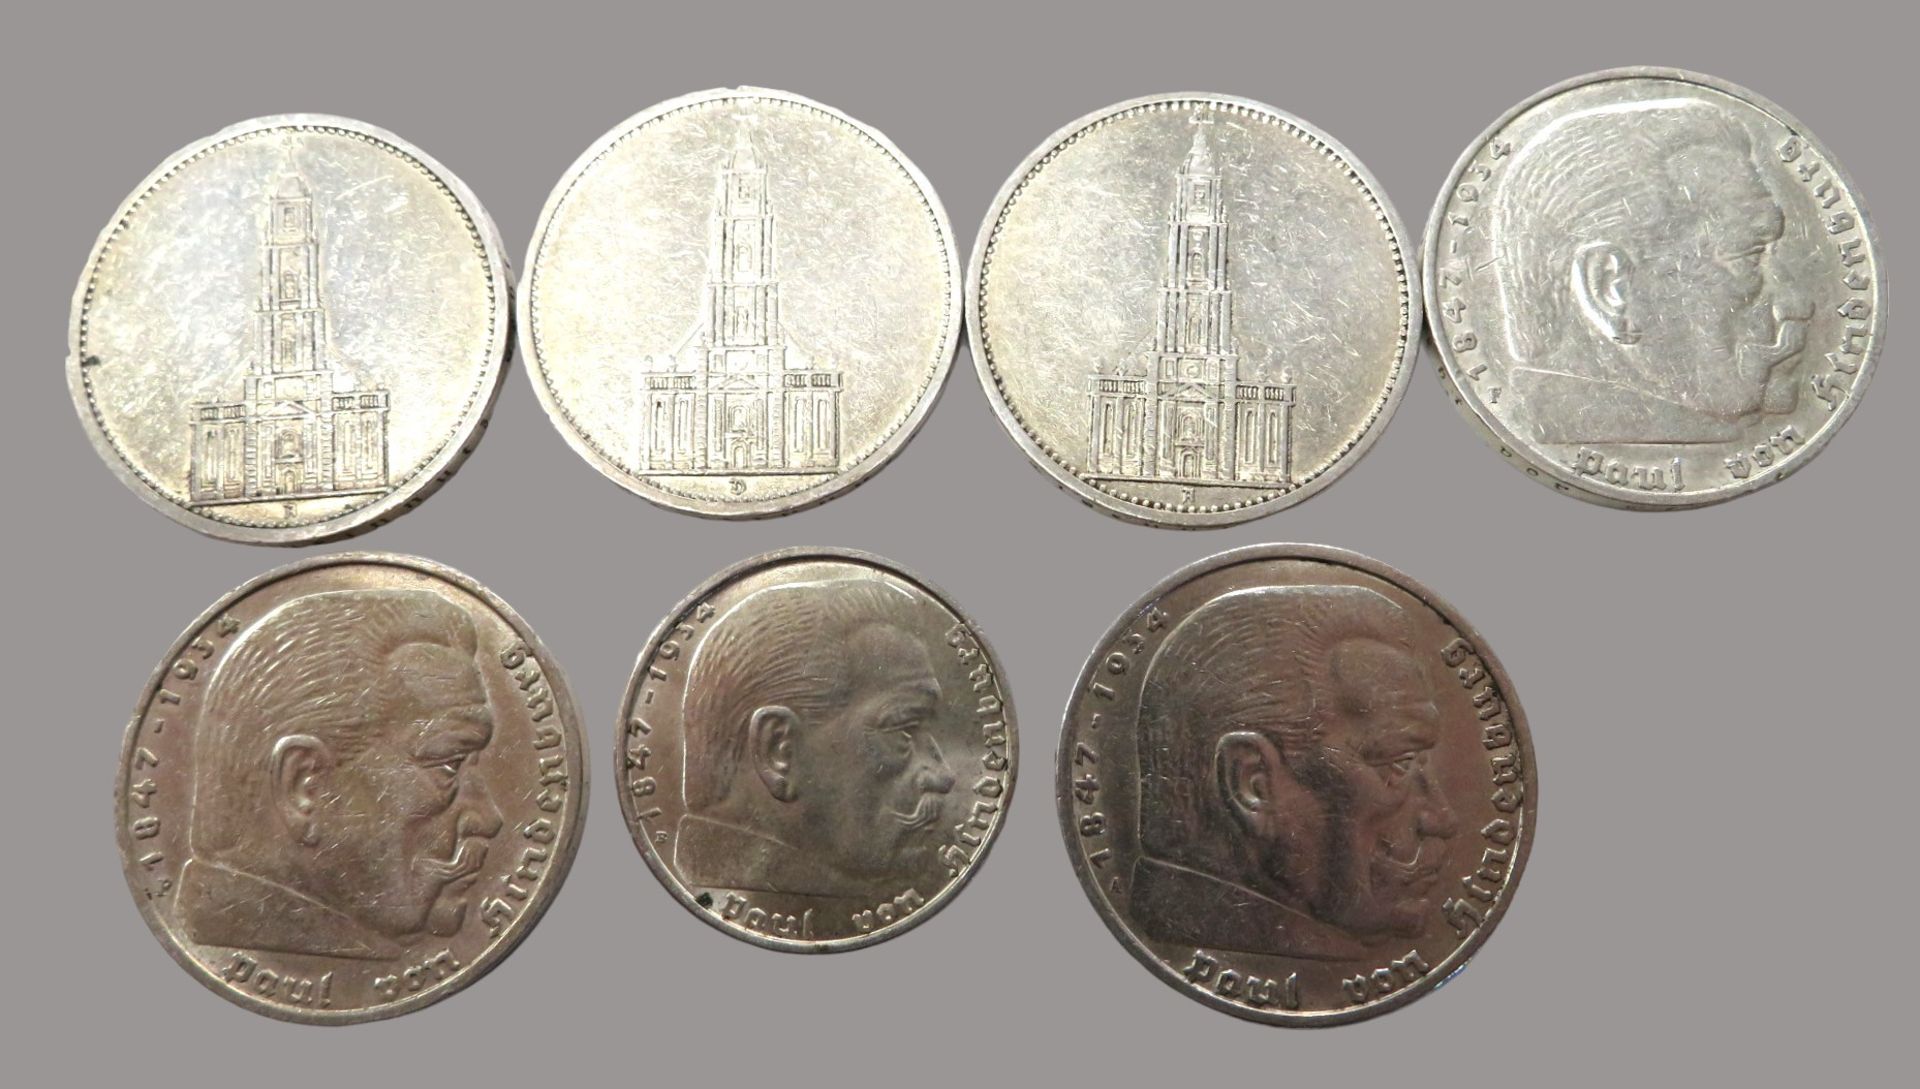 Konvolut von 7 diversen Münzen, 3. Reich, 3 x 5-Mark, Garnisonskirche, 1 x 1934, 2 x 1935/2 x 5-Mar